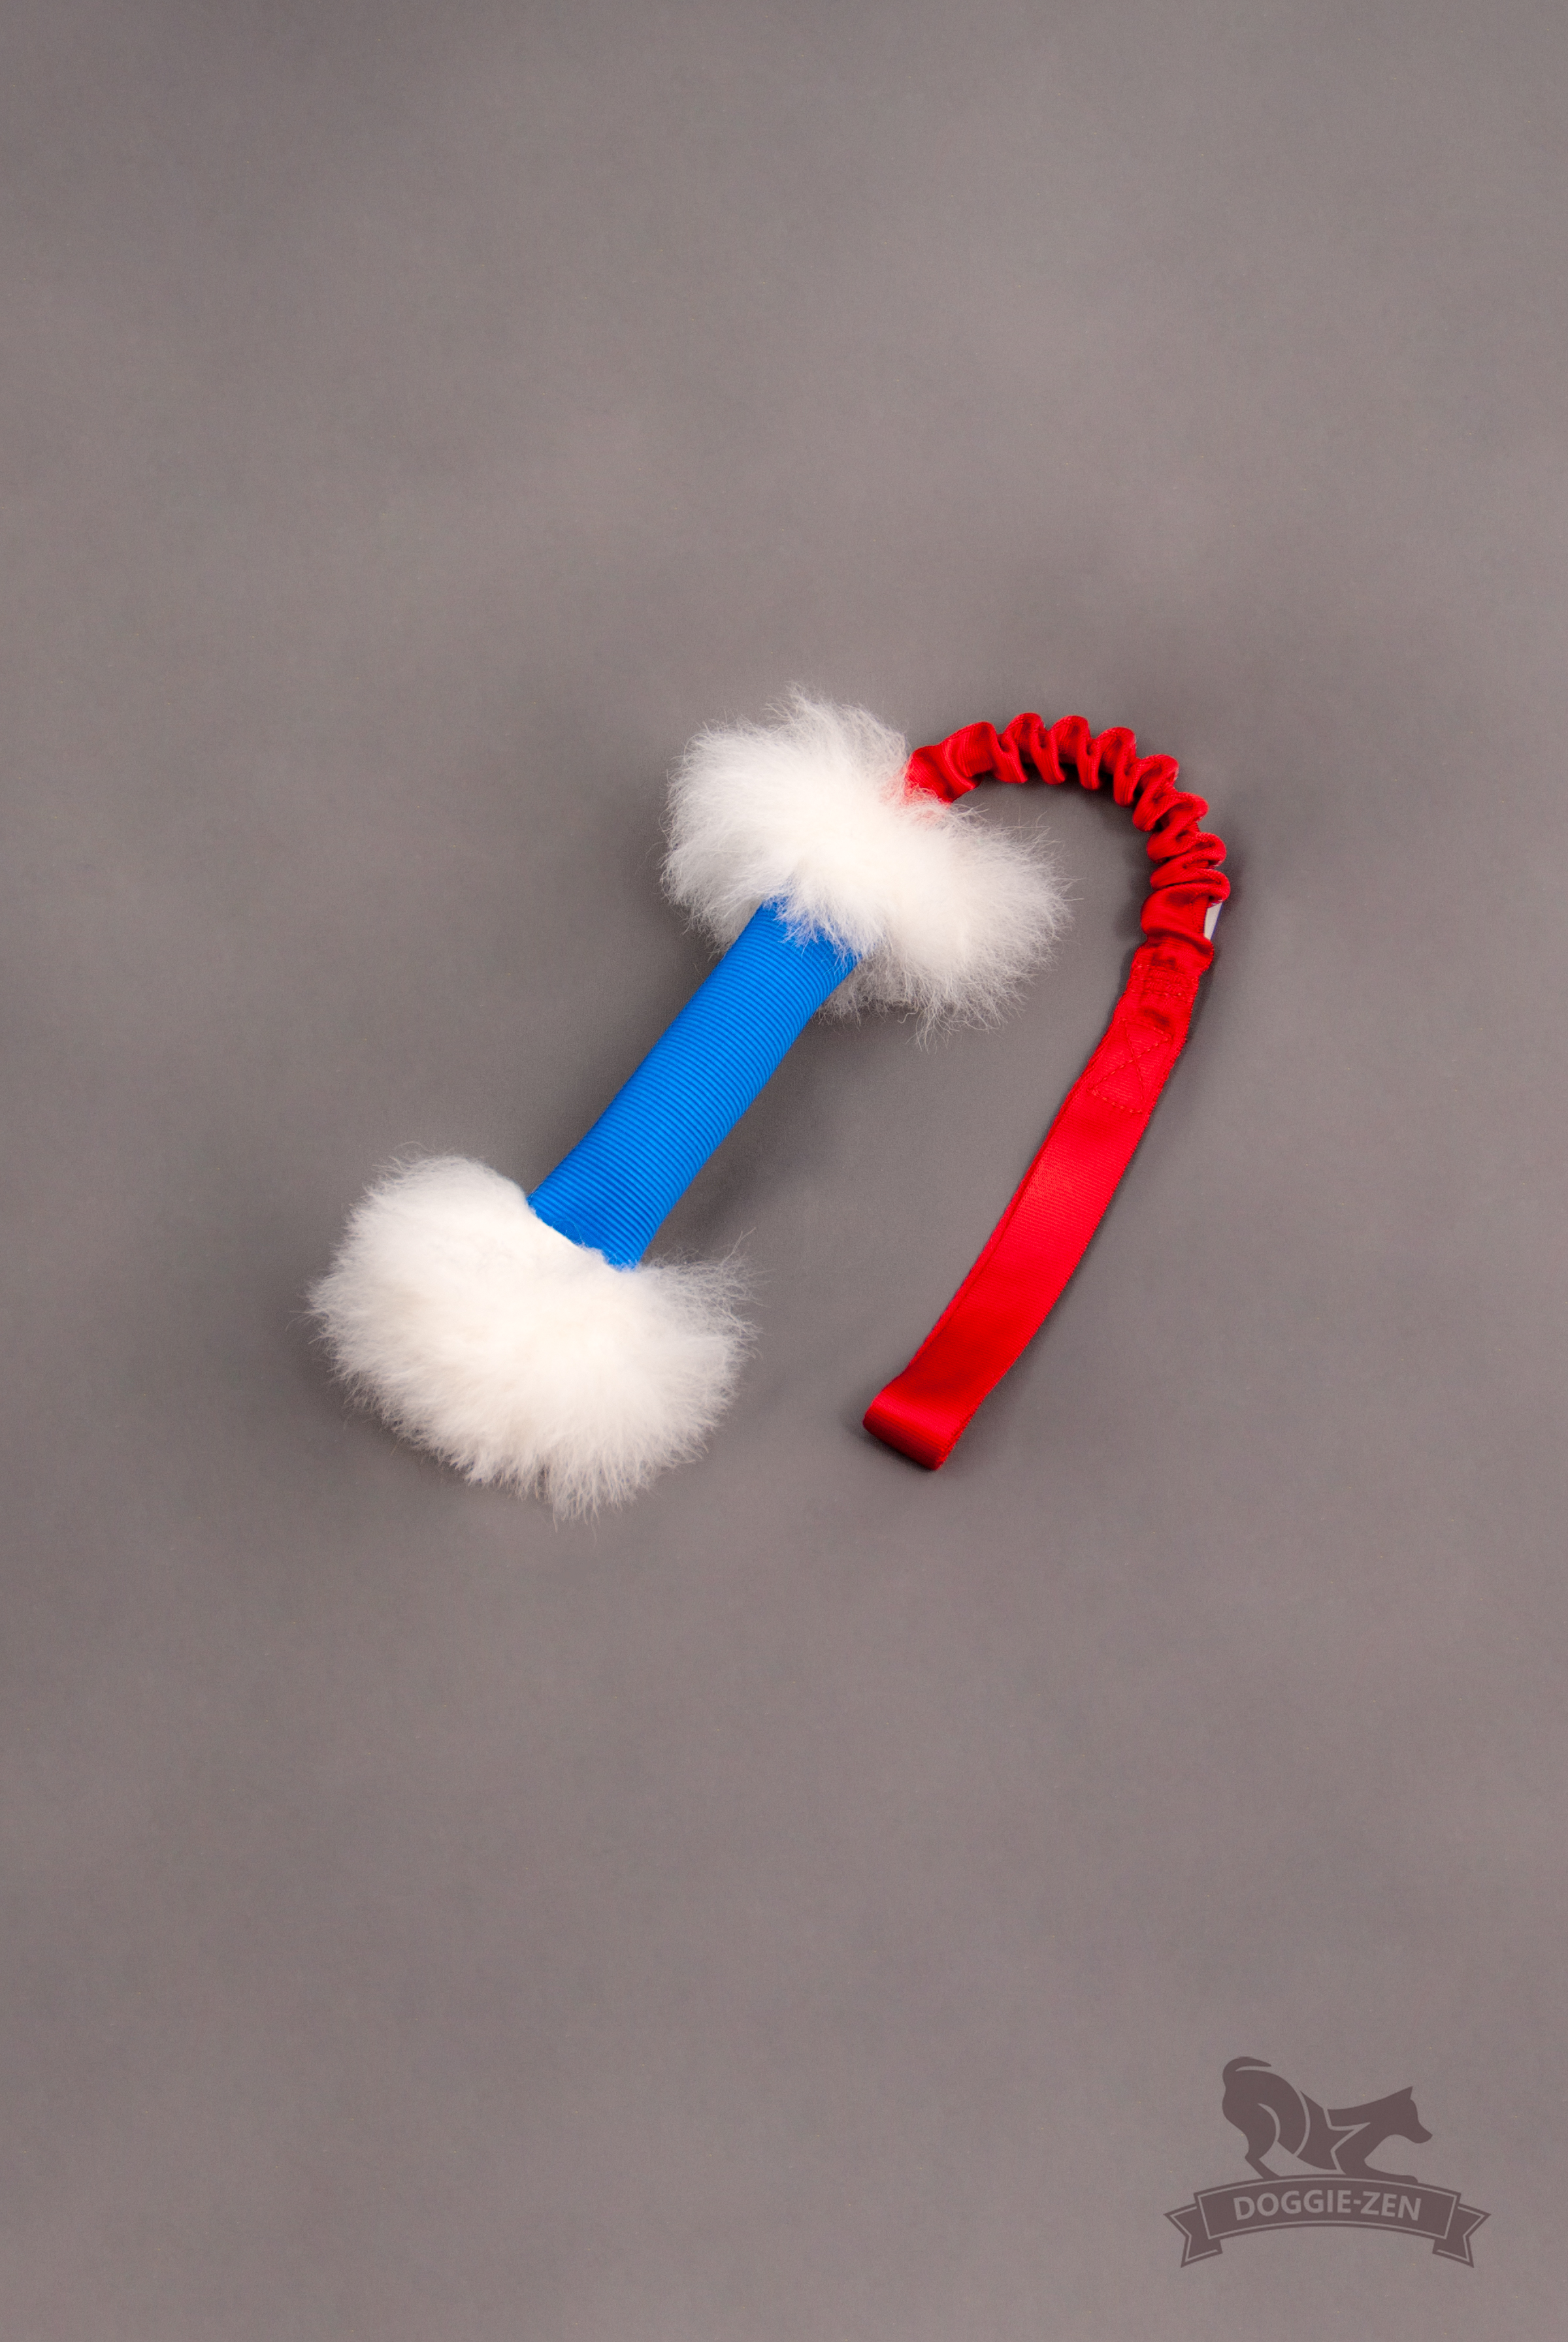 Doggie-zen elastisk slangkampis med fårskinn